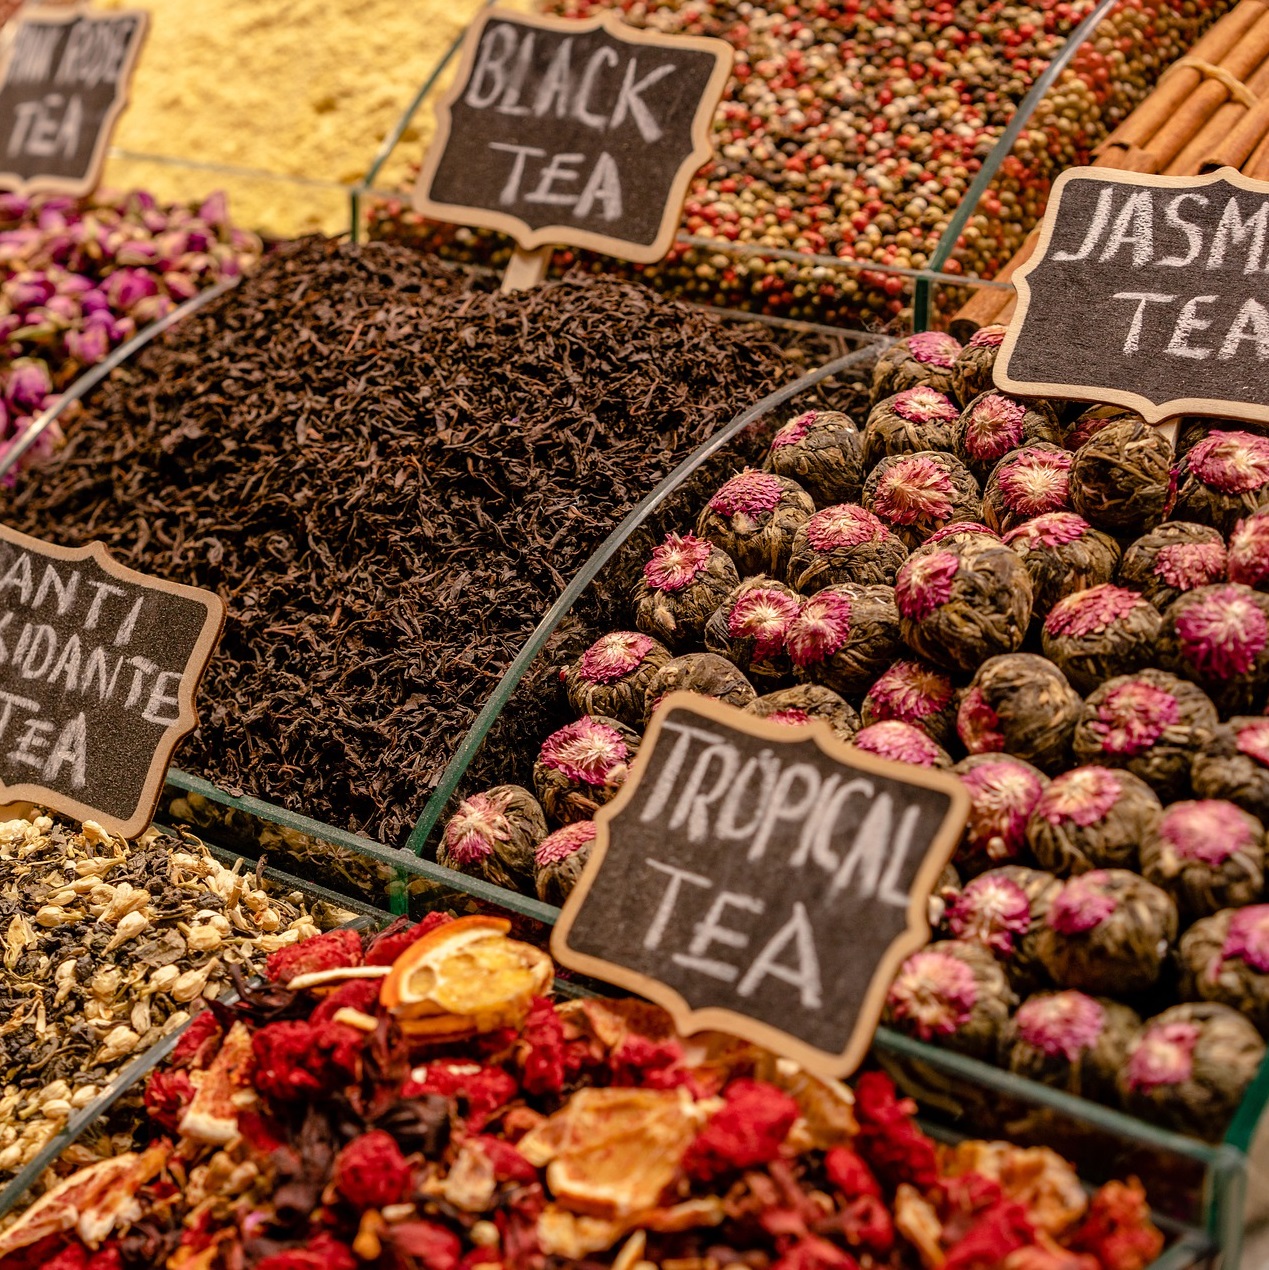 Thé et tisane sur les marchés toulonais